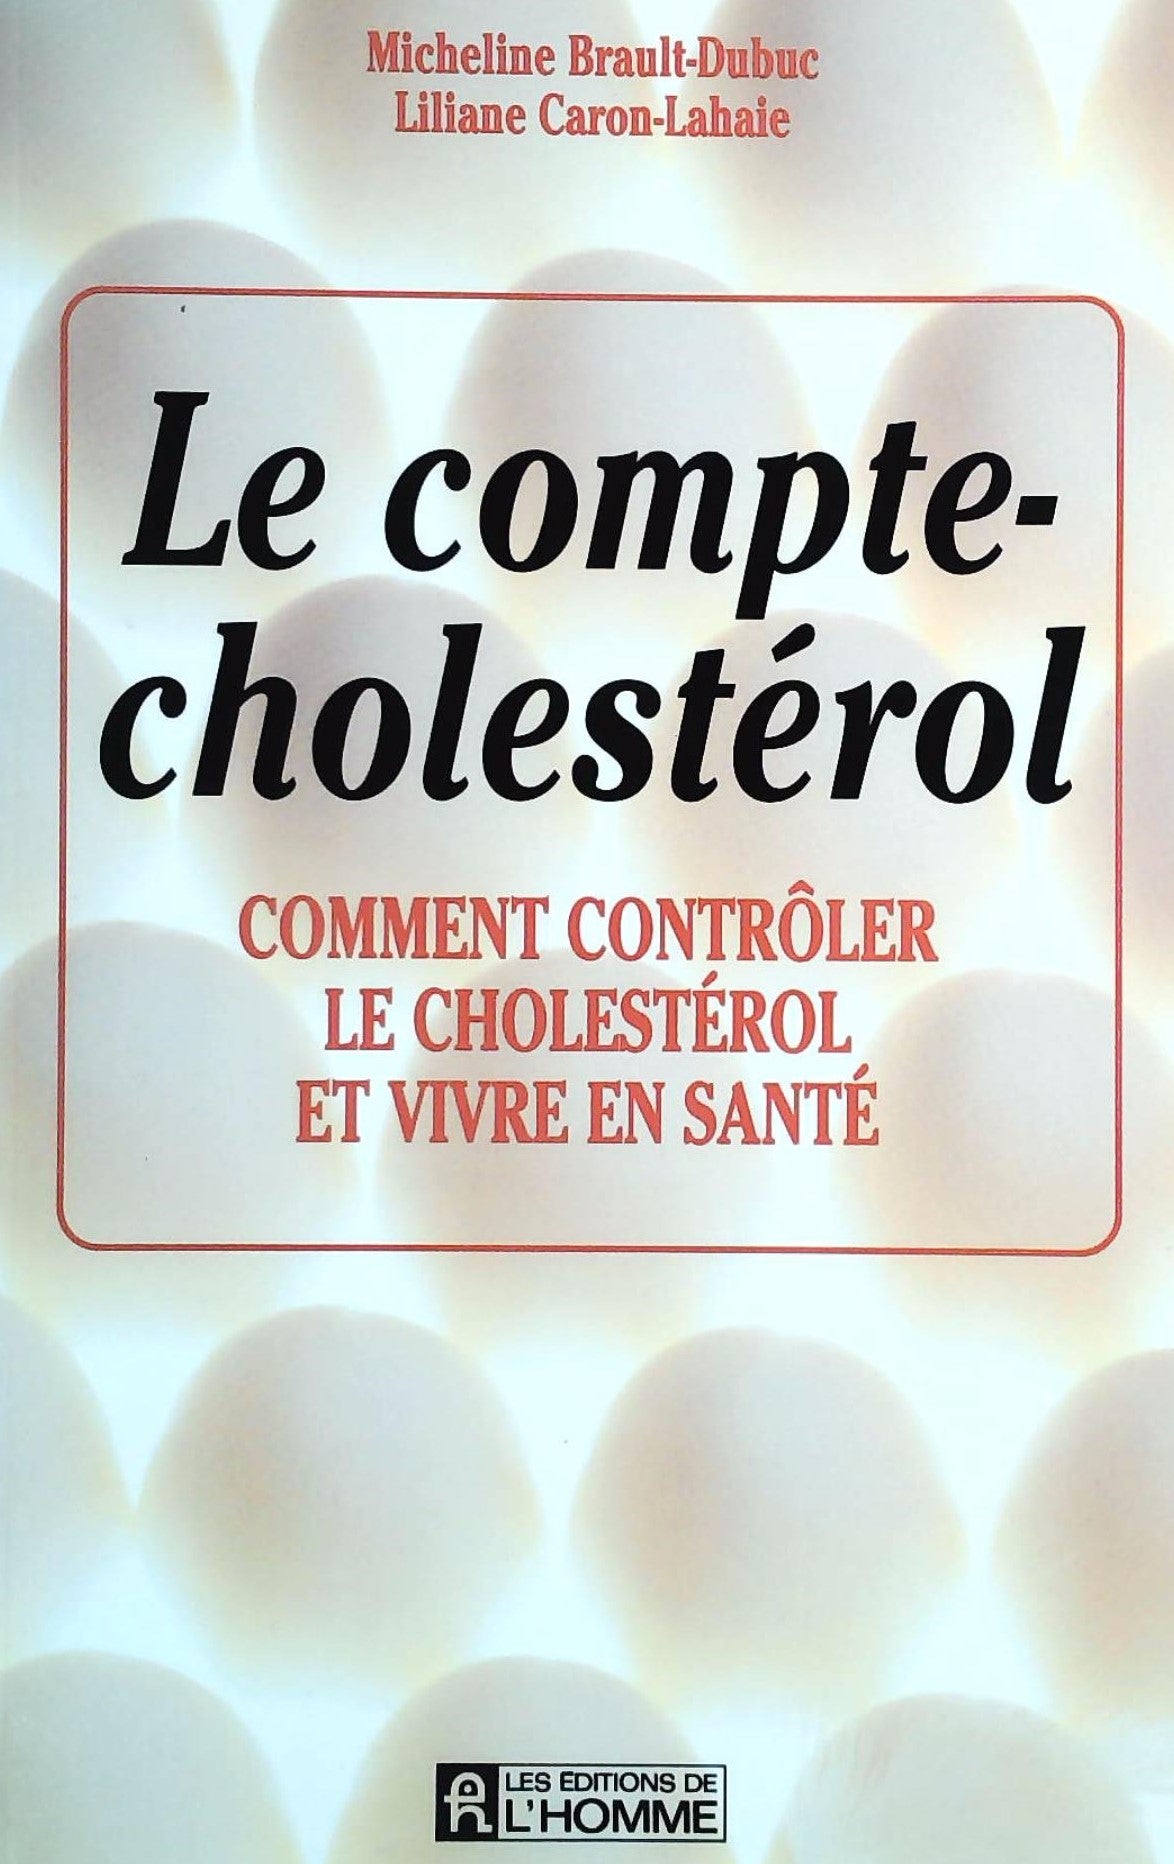 Livre ISBN 2761908252 Le compte-Cholestérol : Comment contrôler le cholestérol et vivre en santé (Micheline Brault-Dubuc)